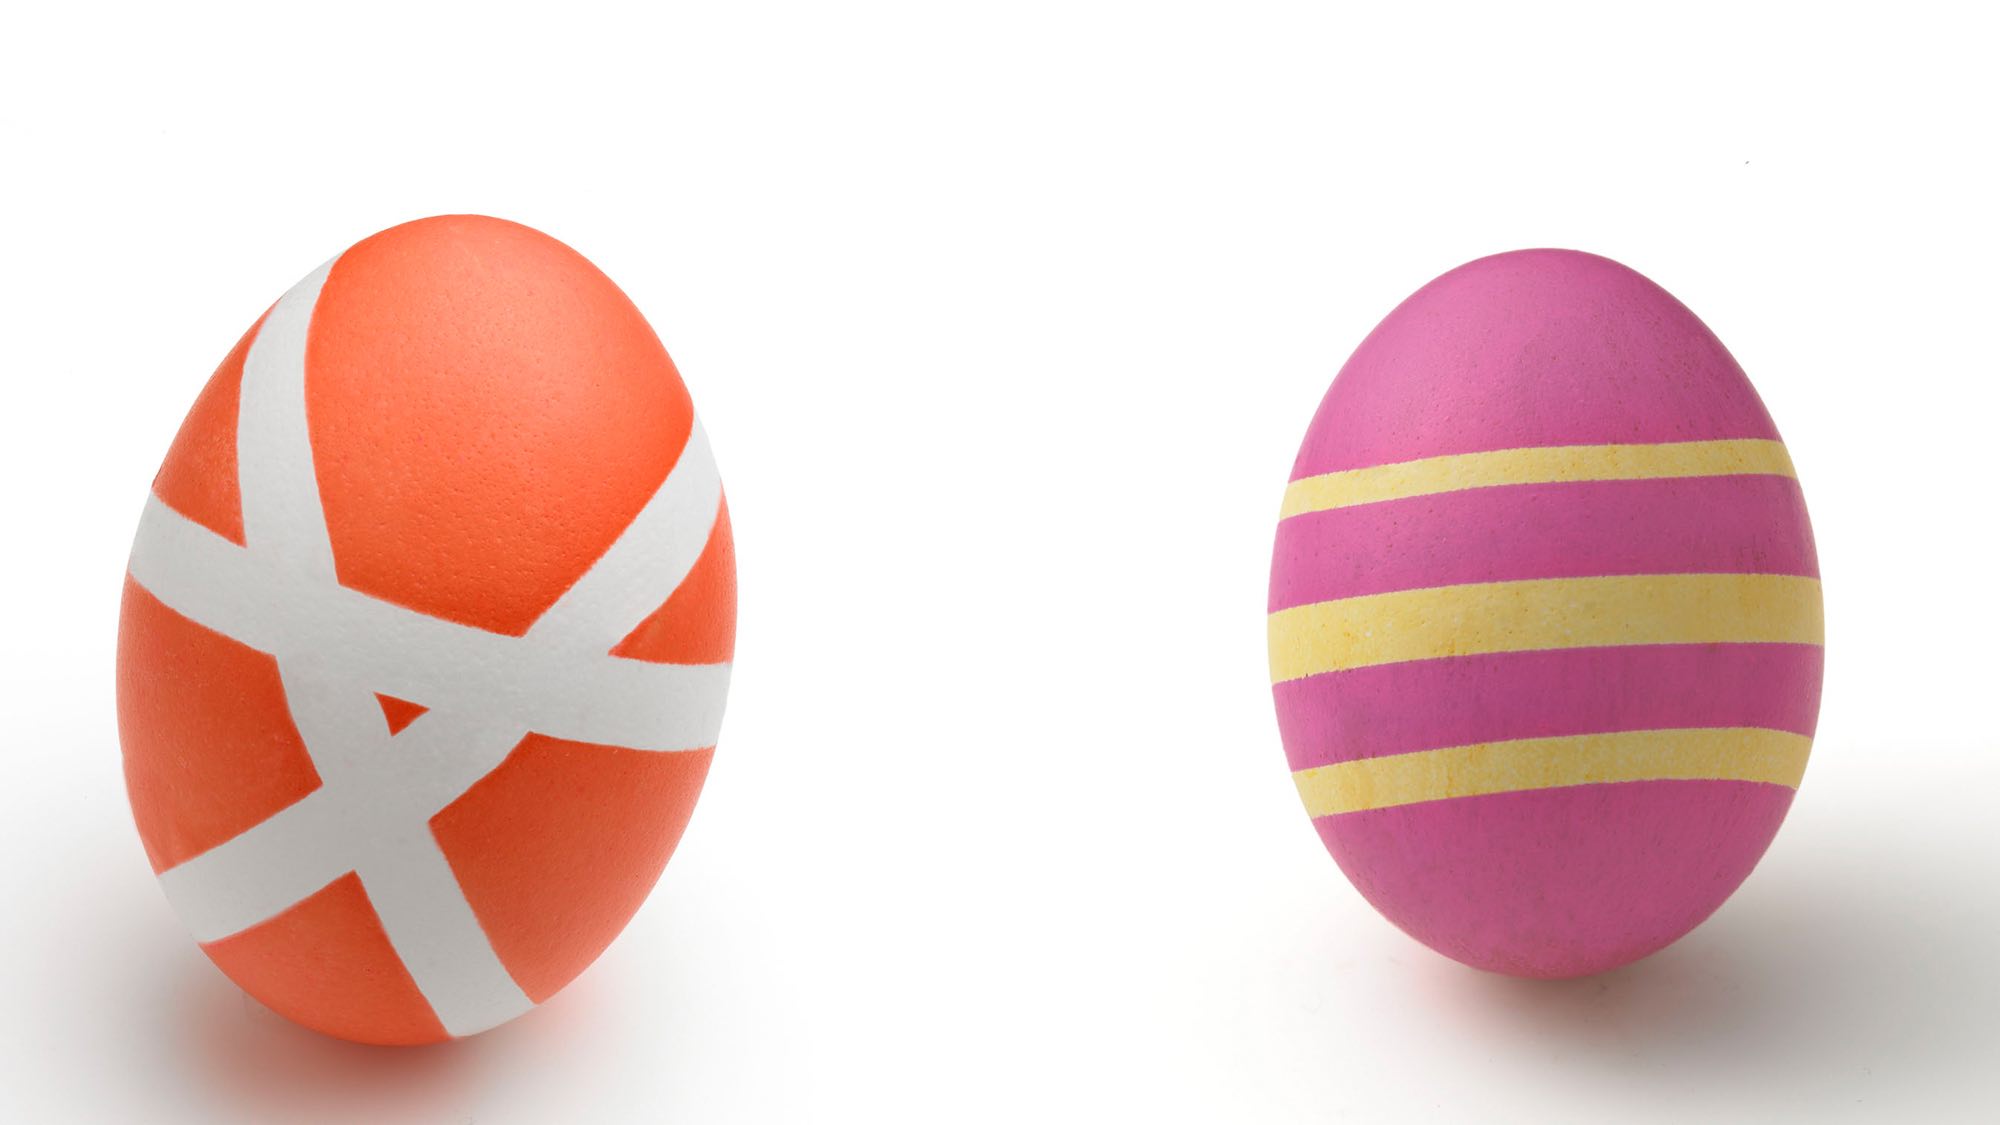 آموزش تصویری رنگ کردن تخم مرغ به صورت راه راه با کمک چسب